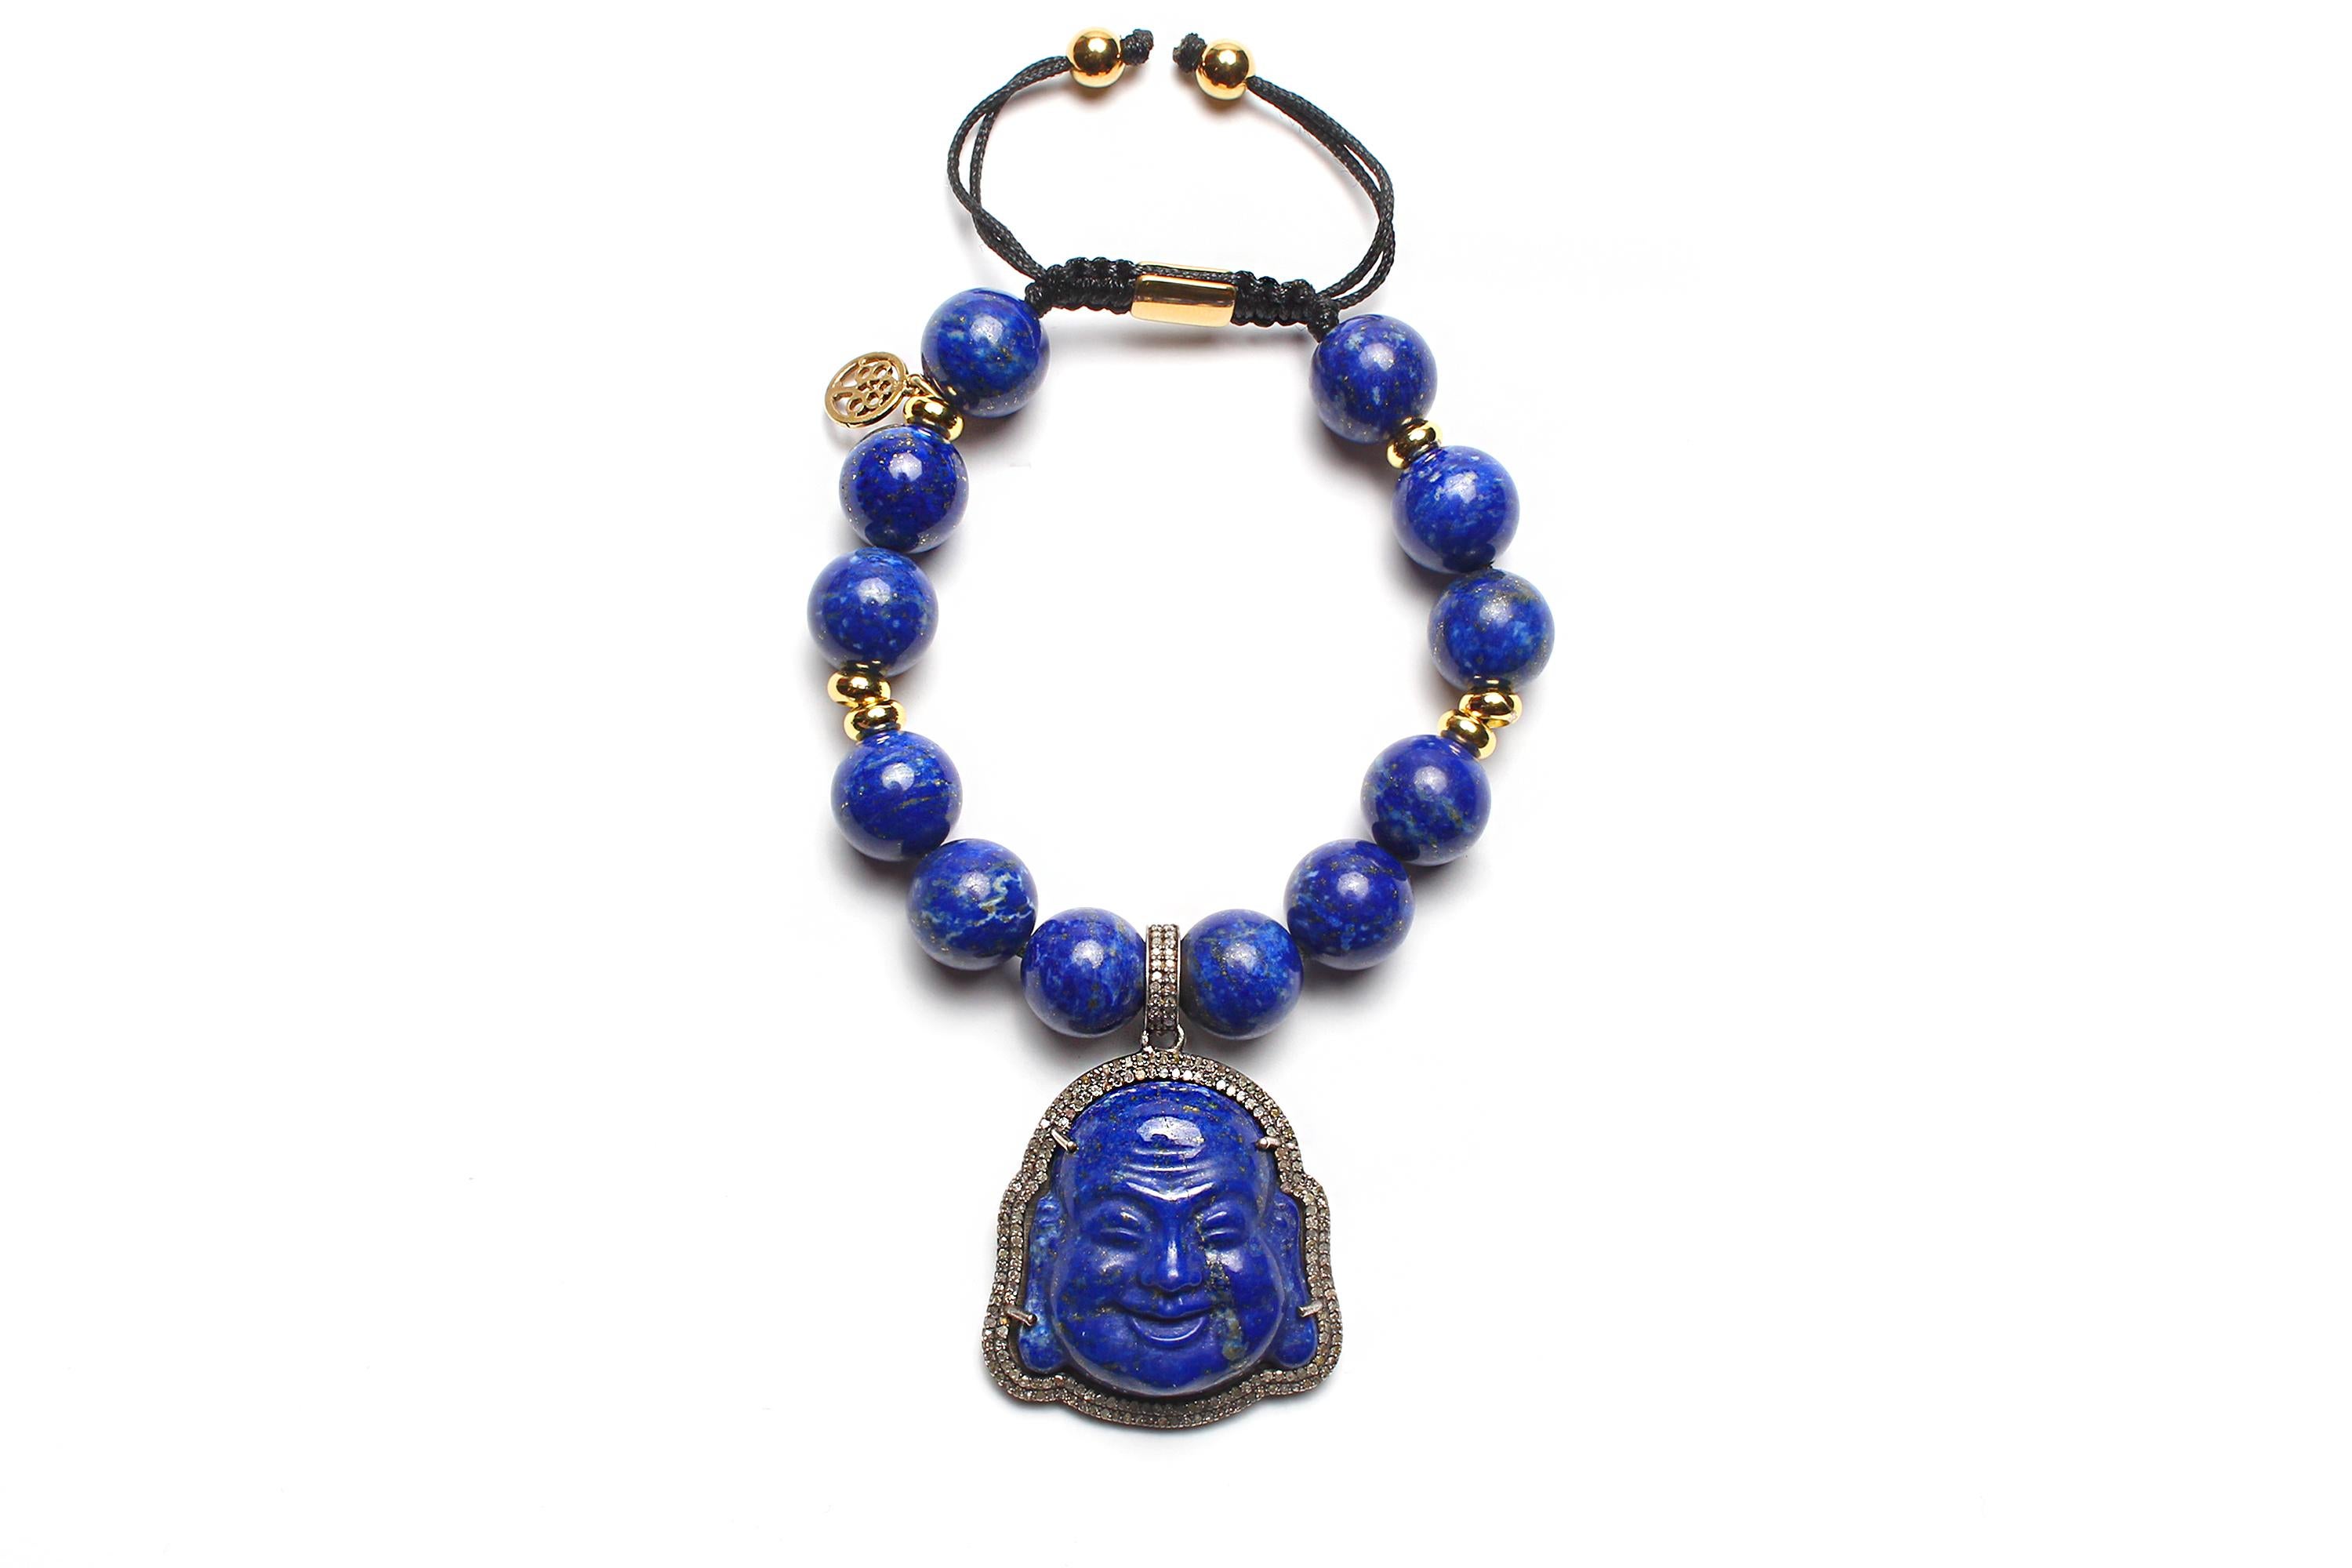 Ce magnifique bracelet zen avec un cordon réglable est votre accessoire boho chic parfait !

- lapis lazuli grade AAA+ 12 mm perles rondes et lisses
- Petites perles d'espacement de 6 mm en or 14k
- breloque bouddha en argent 925 lapis lazuli bleu